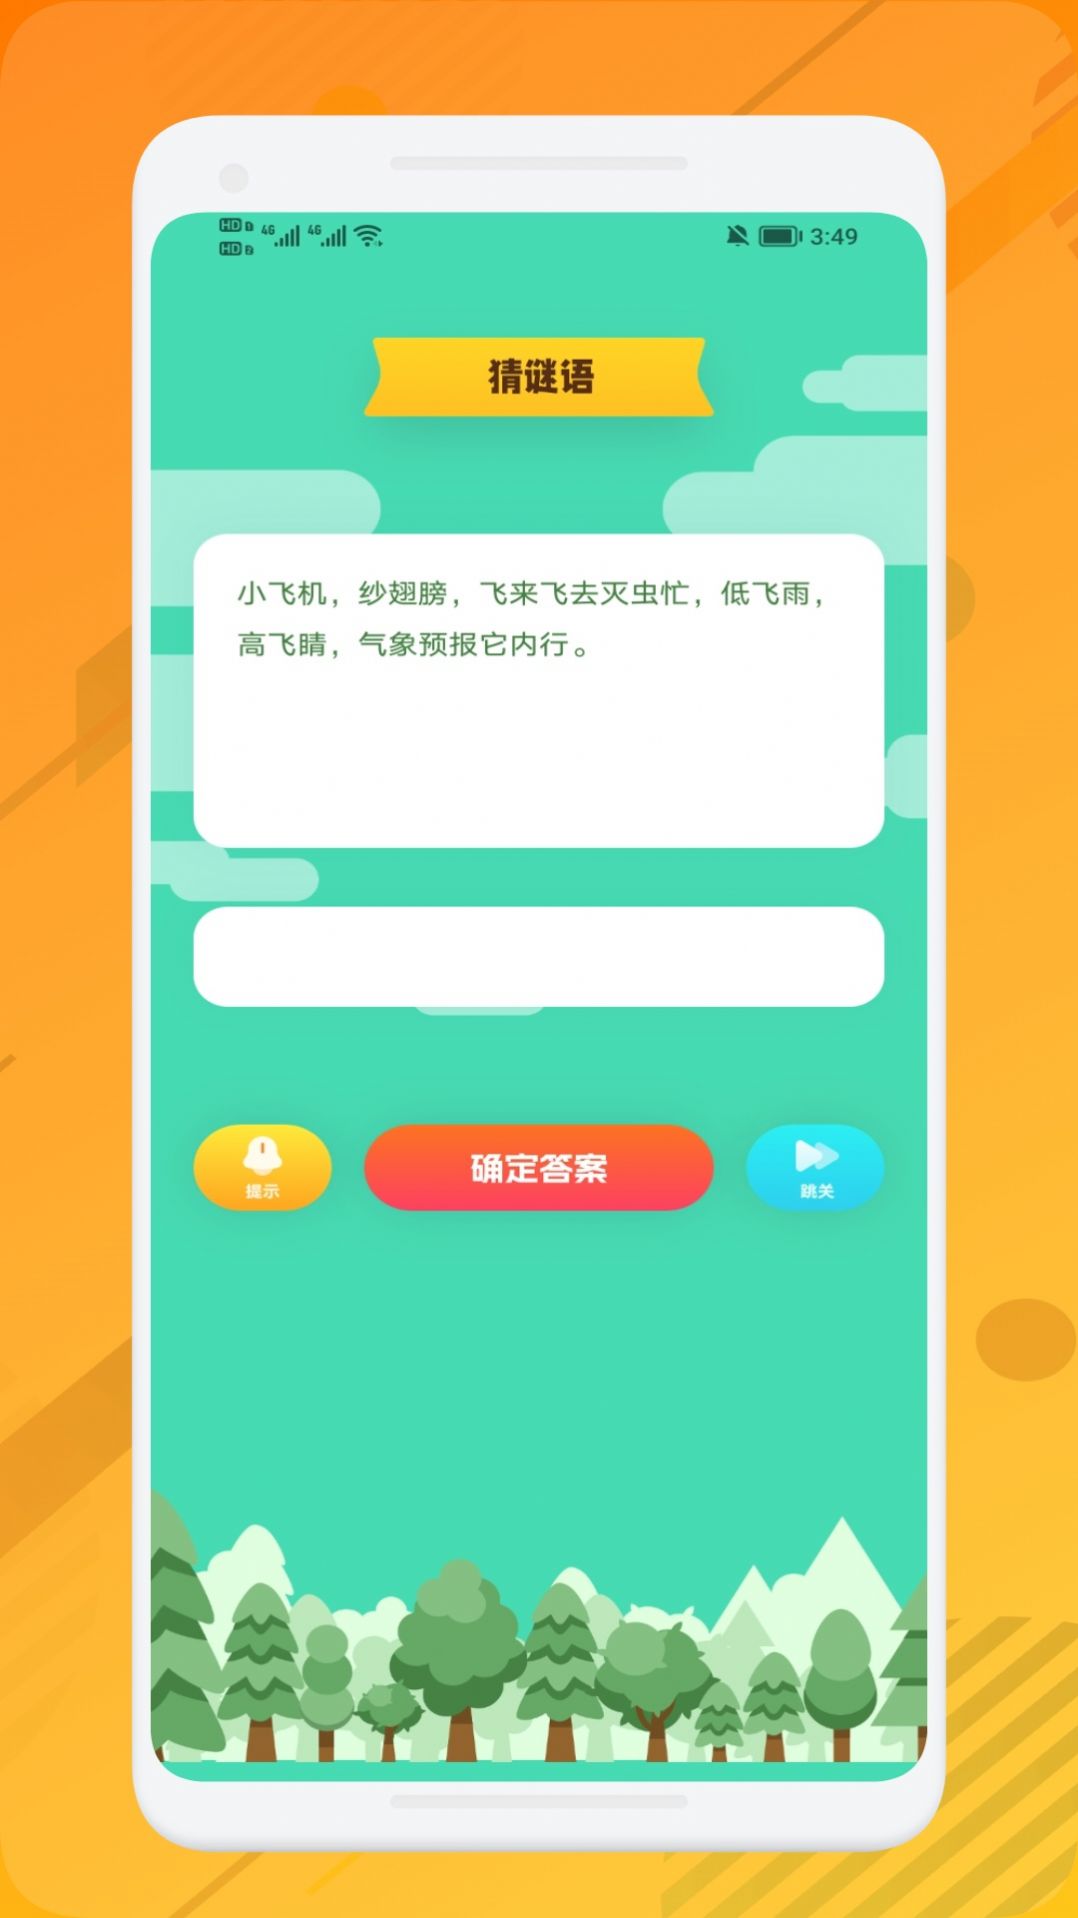 399开心乐园app手机版图片1